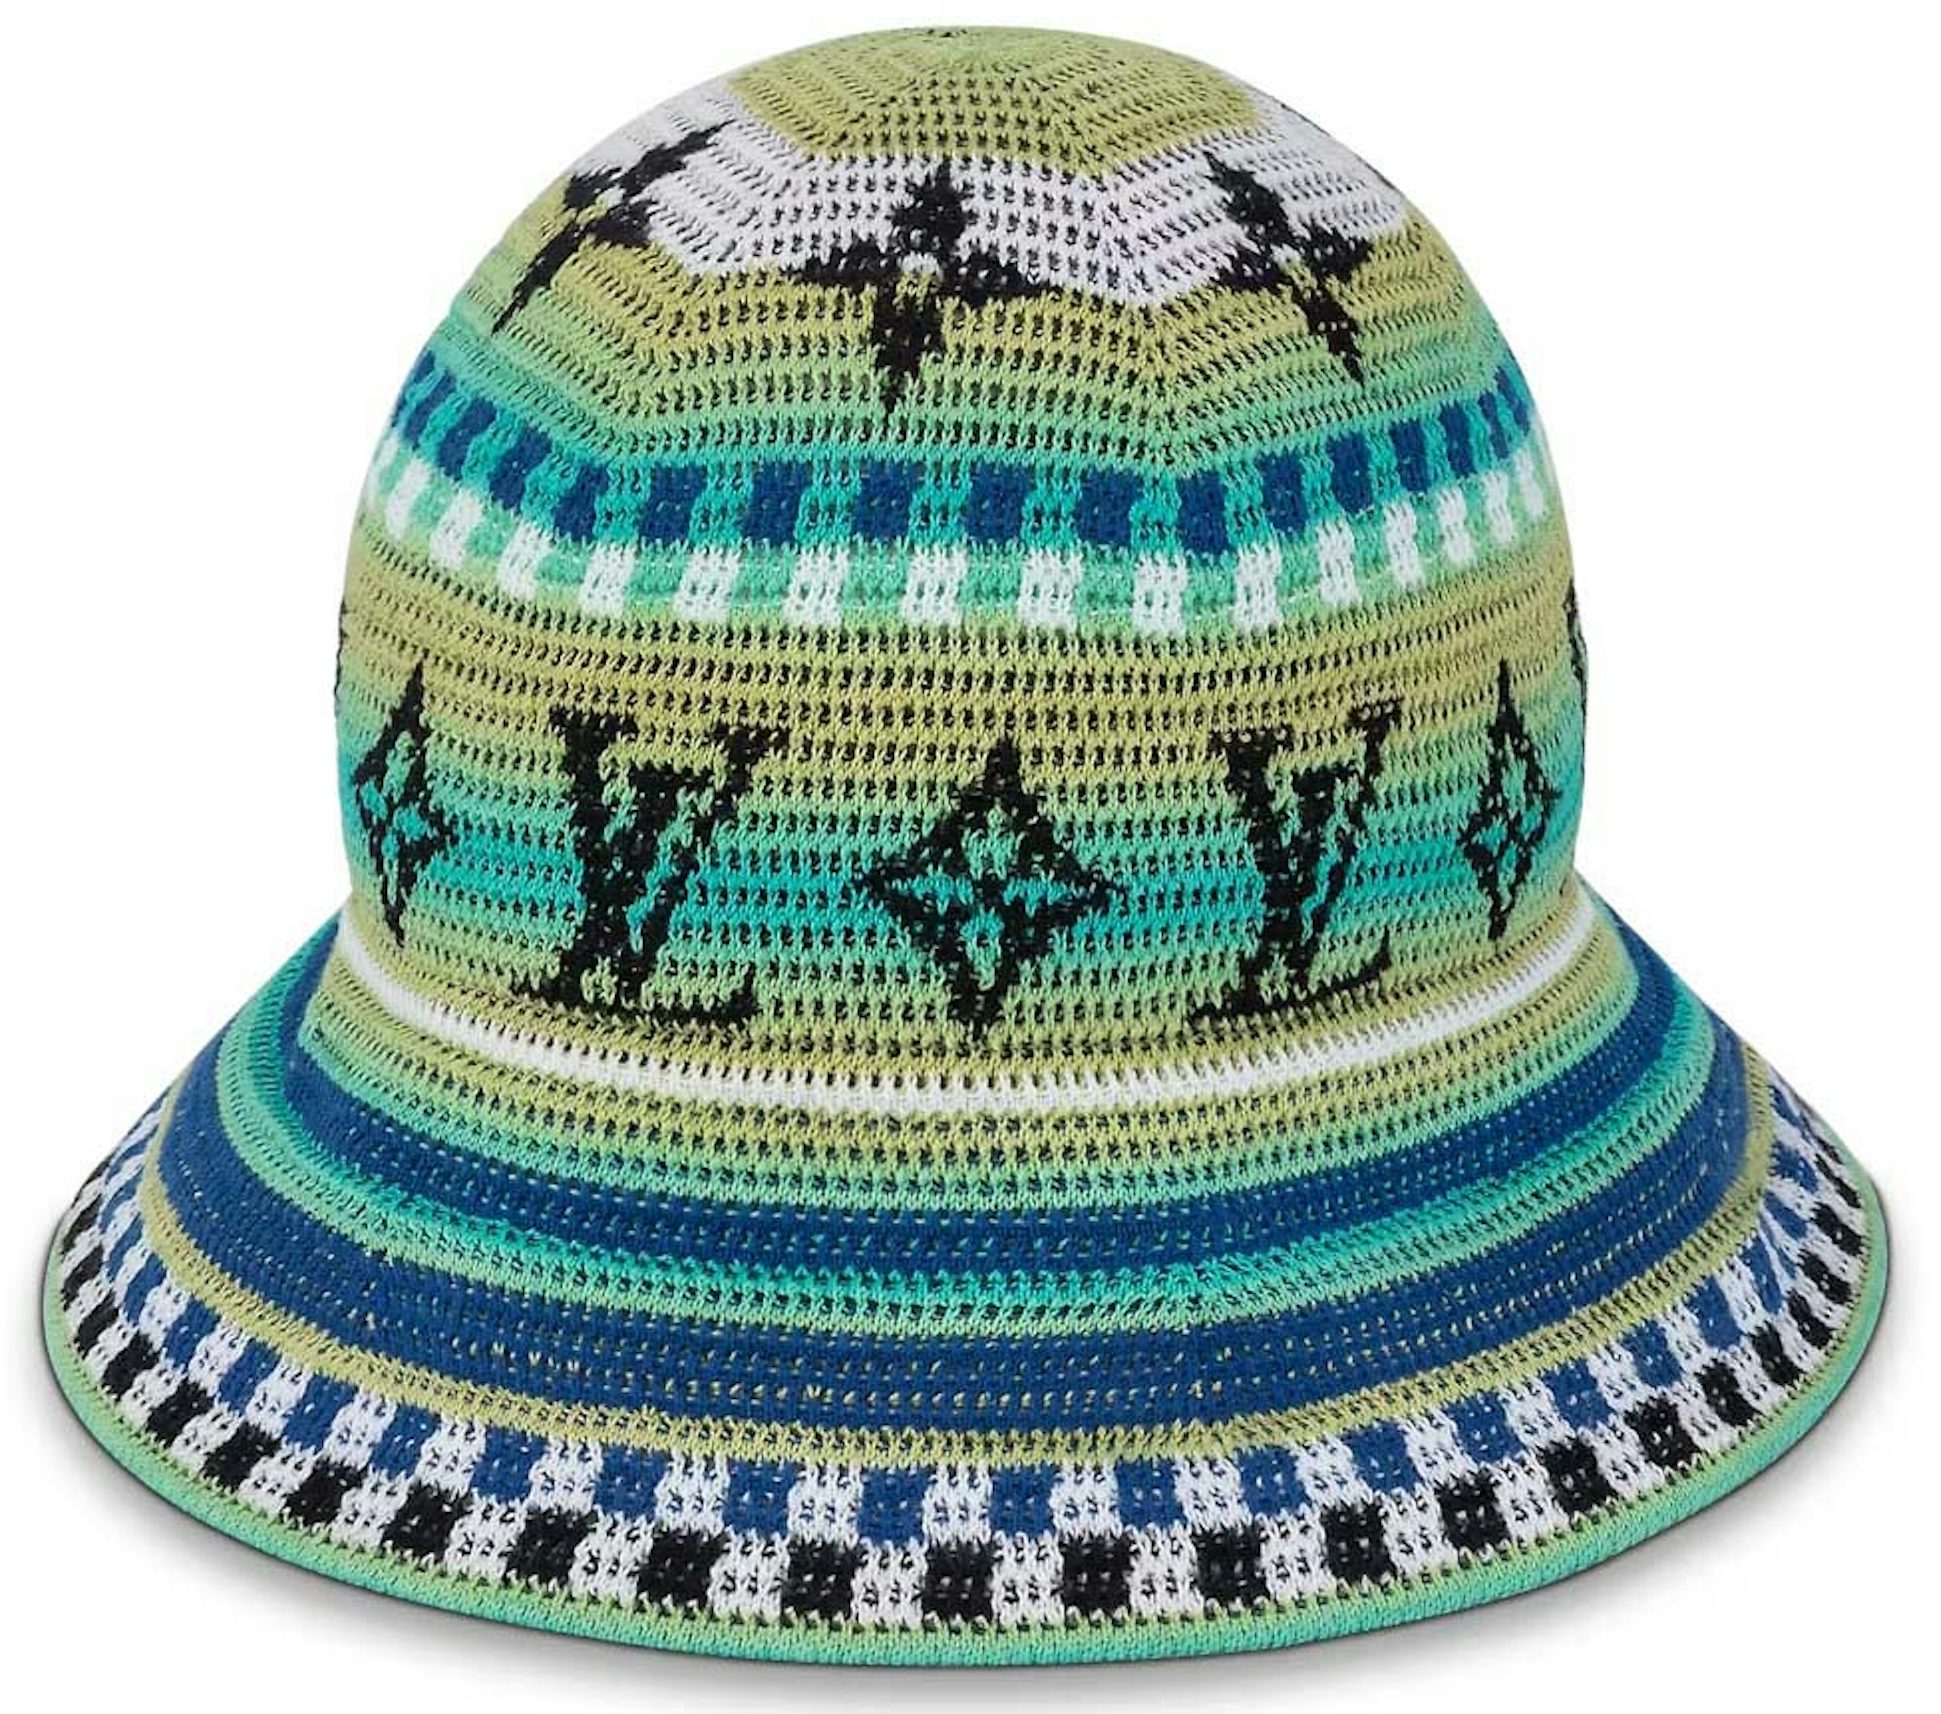 Men's Monogram Constellation Bucket Hat, LOUIS VUITTON